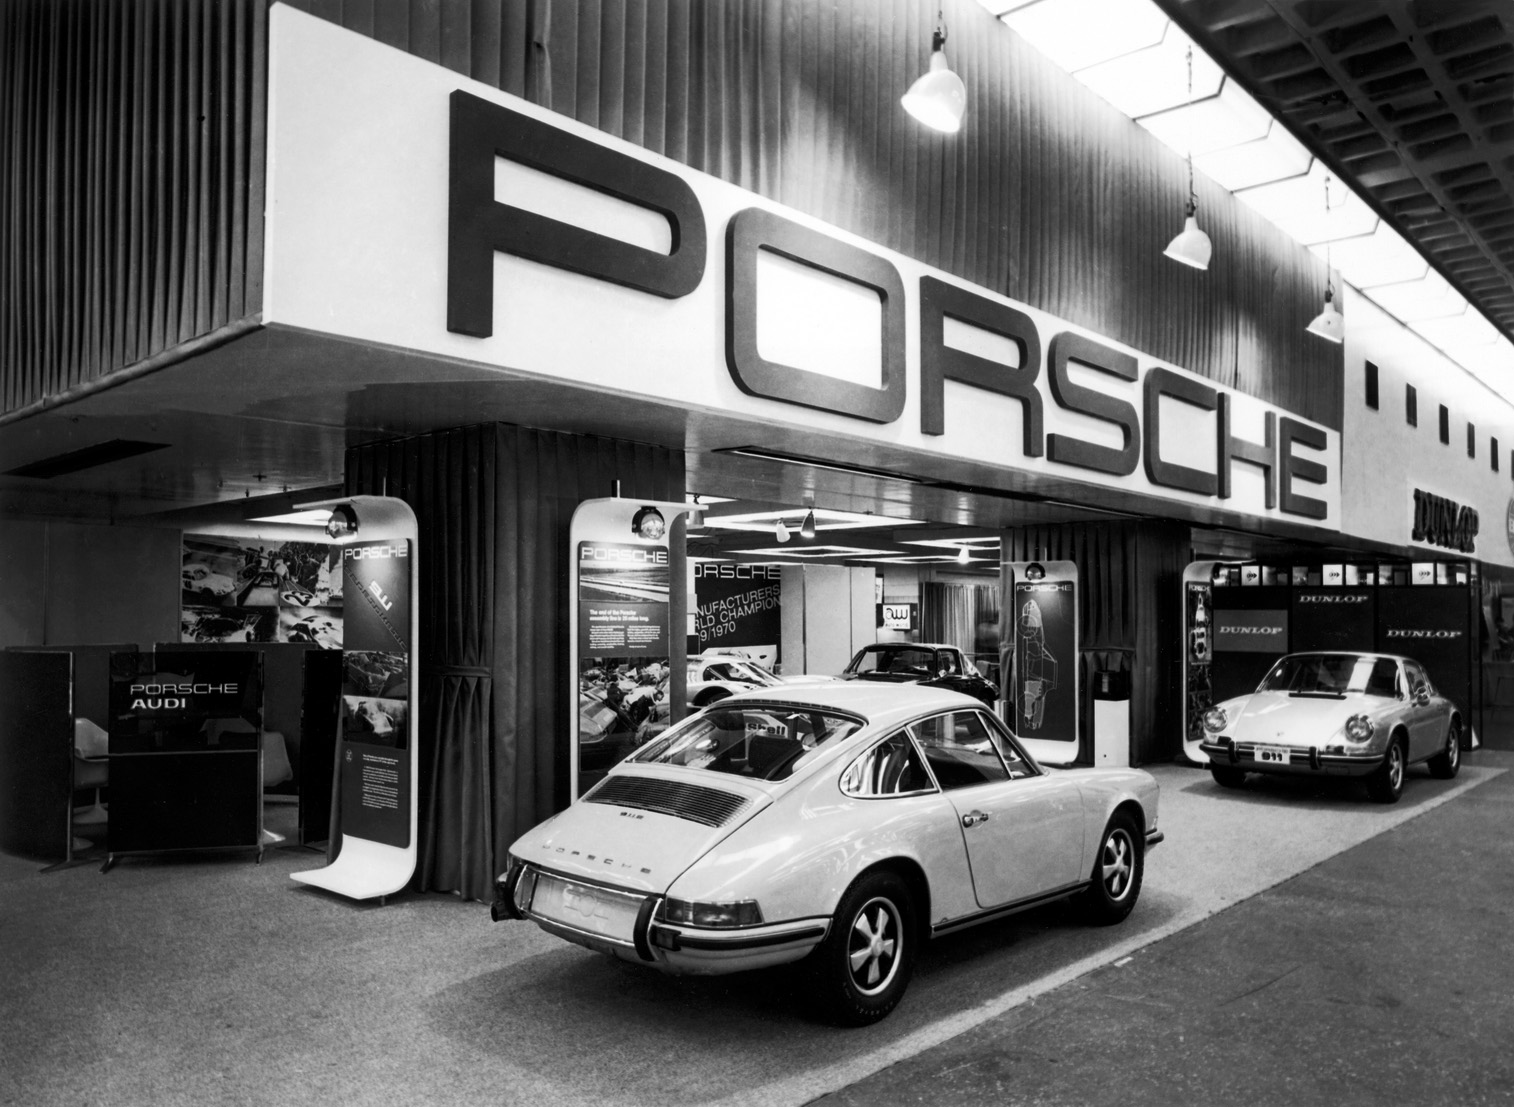 Two white Porsches 911.